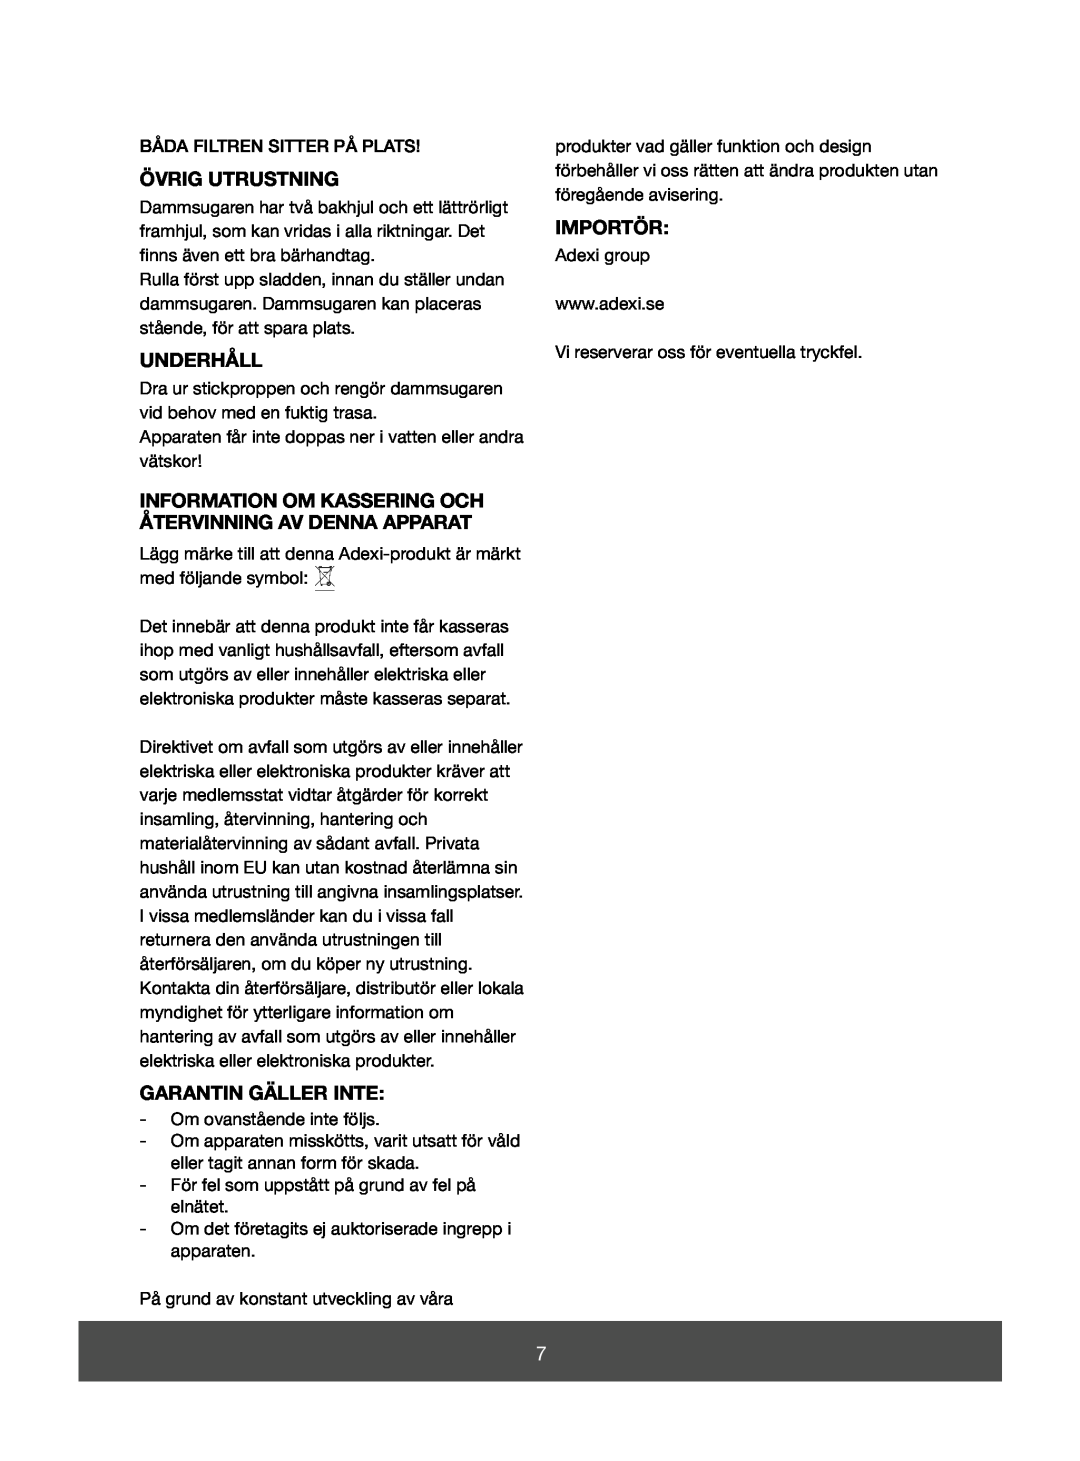 Melissa 640-073 manual Övrig Utrustning, Underhåll, Garantin Gäller Inte, Importör 